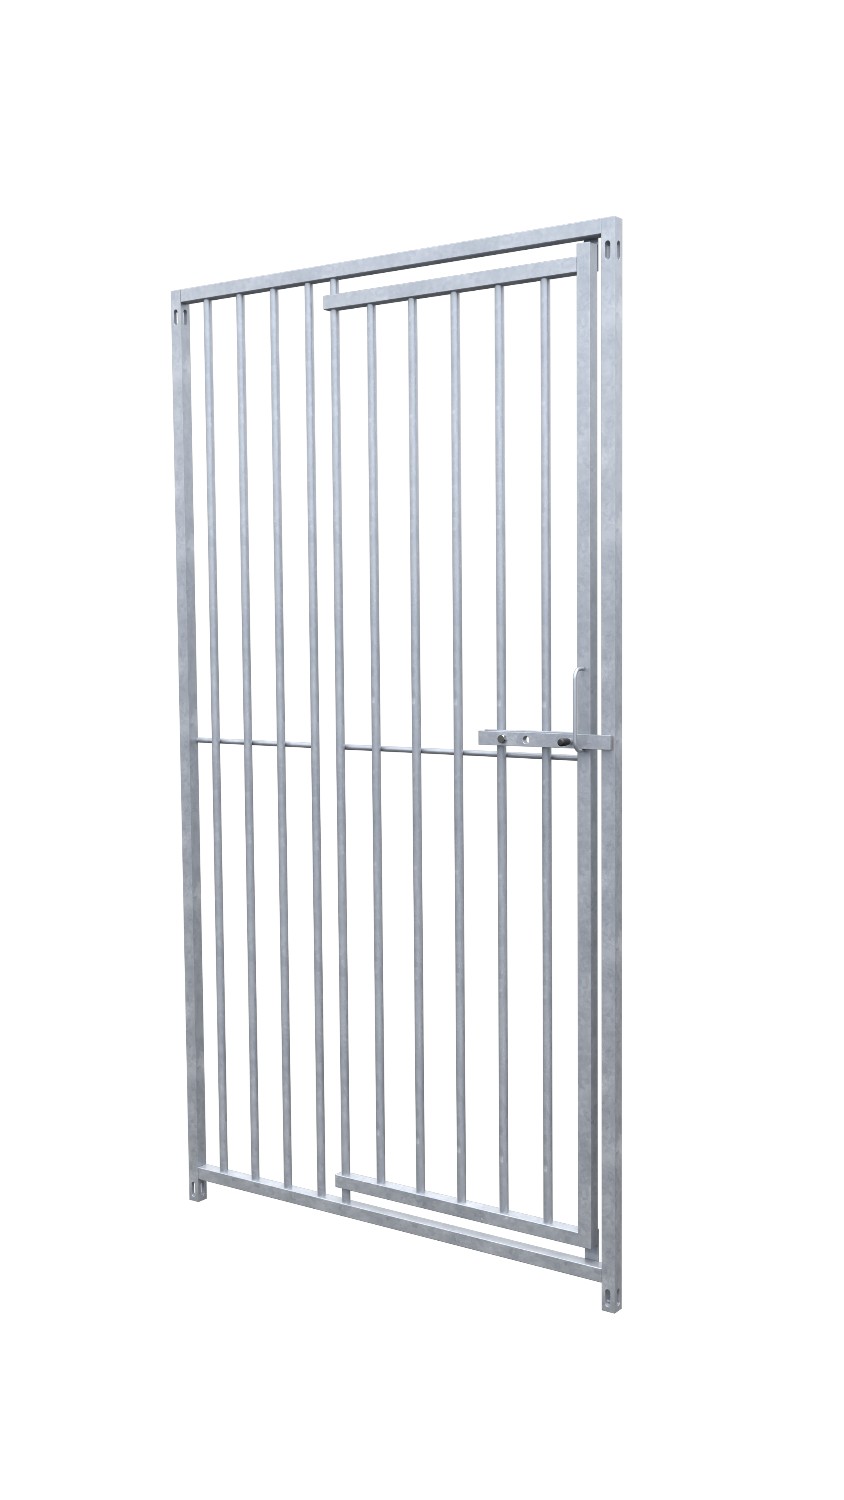 Hundezwinger Rohrstabelement Preisstar mit Tür, 1,84 x 1,0 m | Rohrabstand 8 cm